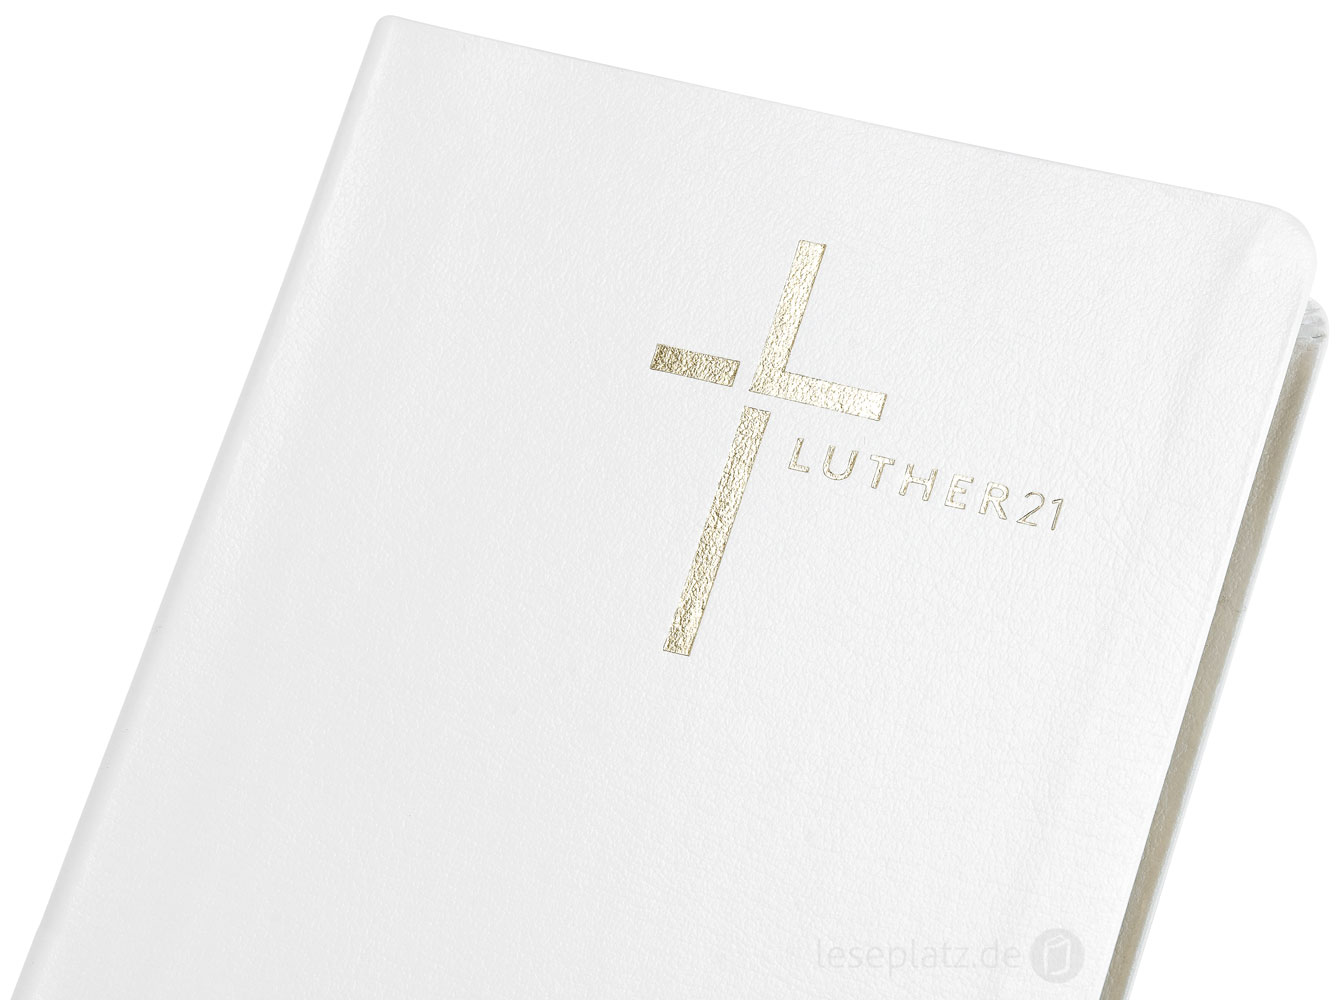 Luther21 - Standardausgabe -  Lederfaserstoff weiß